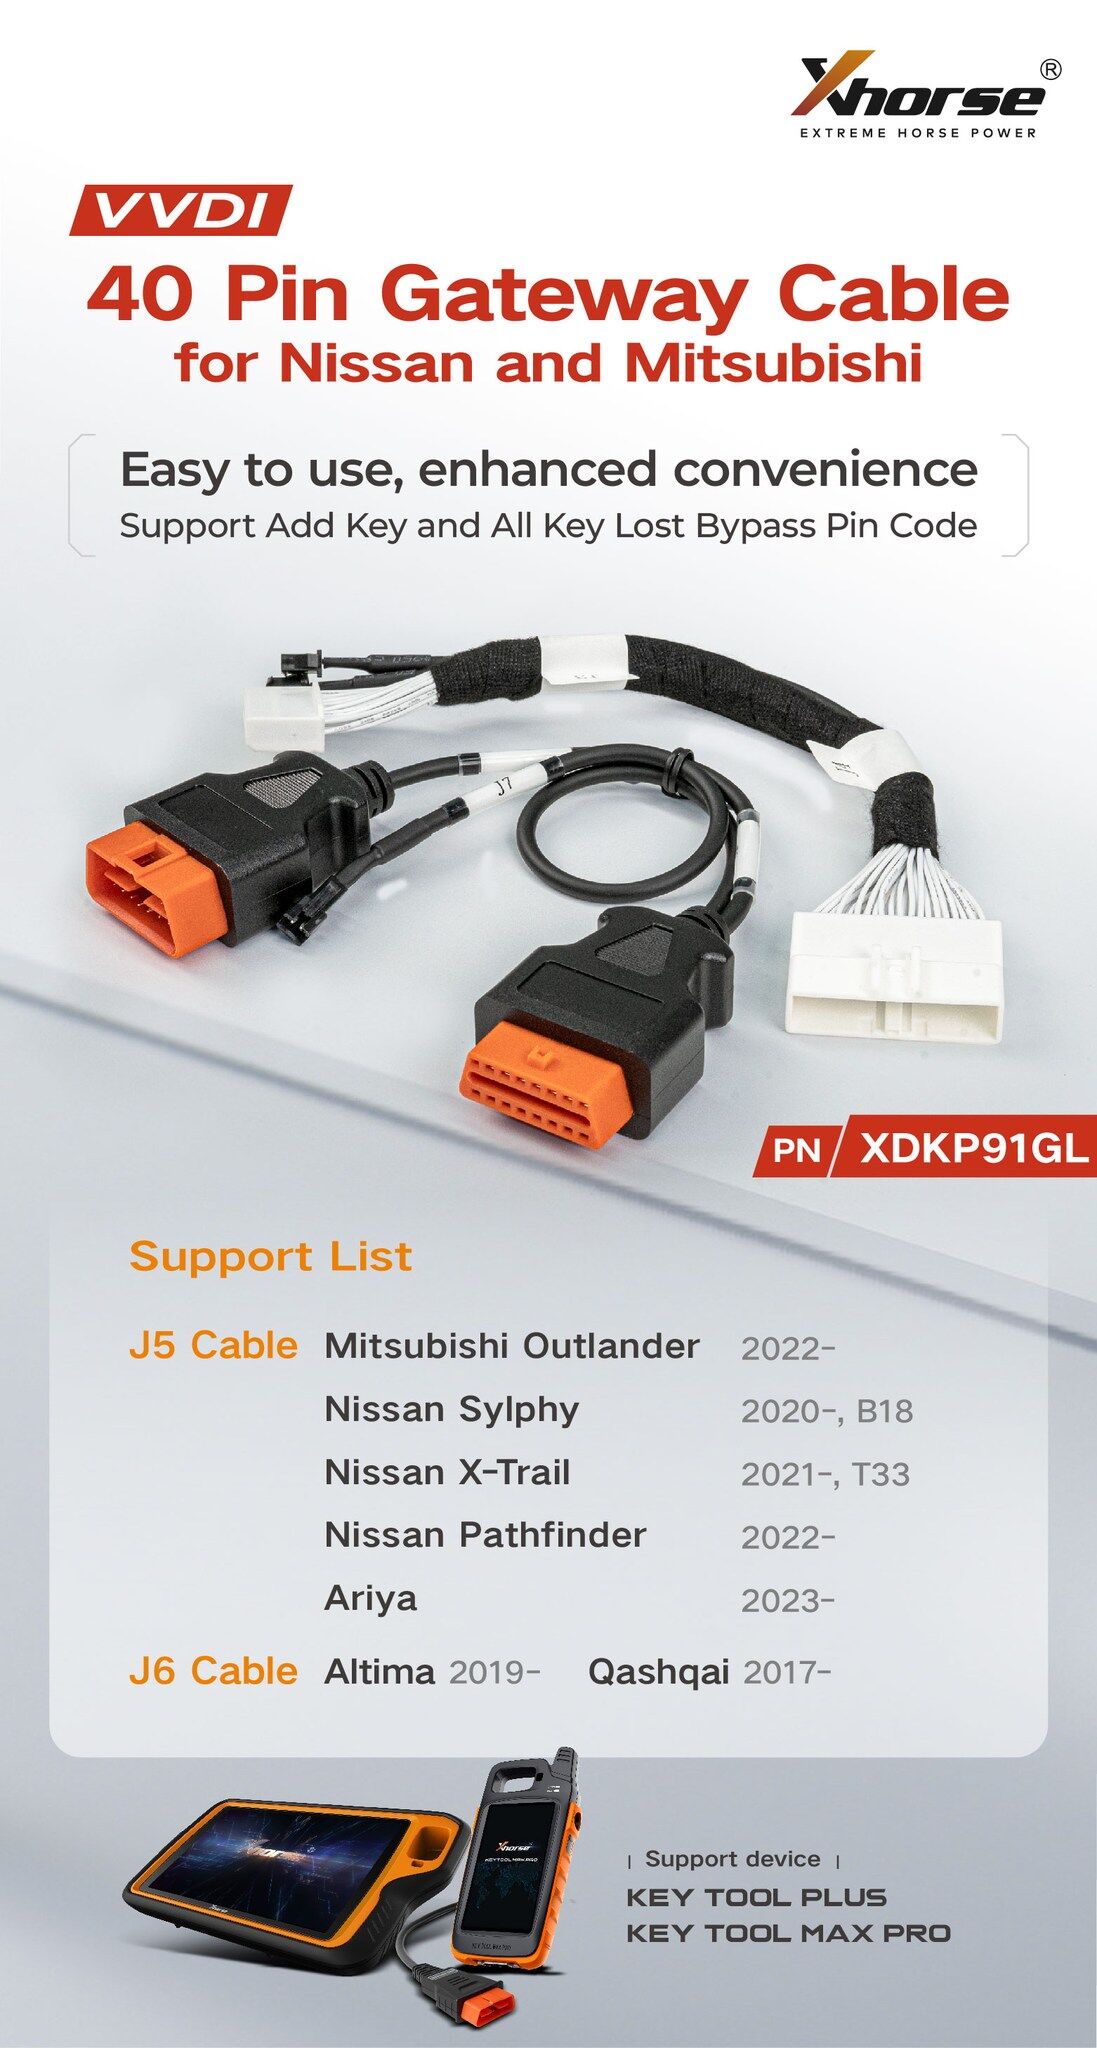 Xhorse VVDI XDKP91GL 40 Pin Gateway Cable for Nissan Mitsubishi 